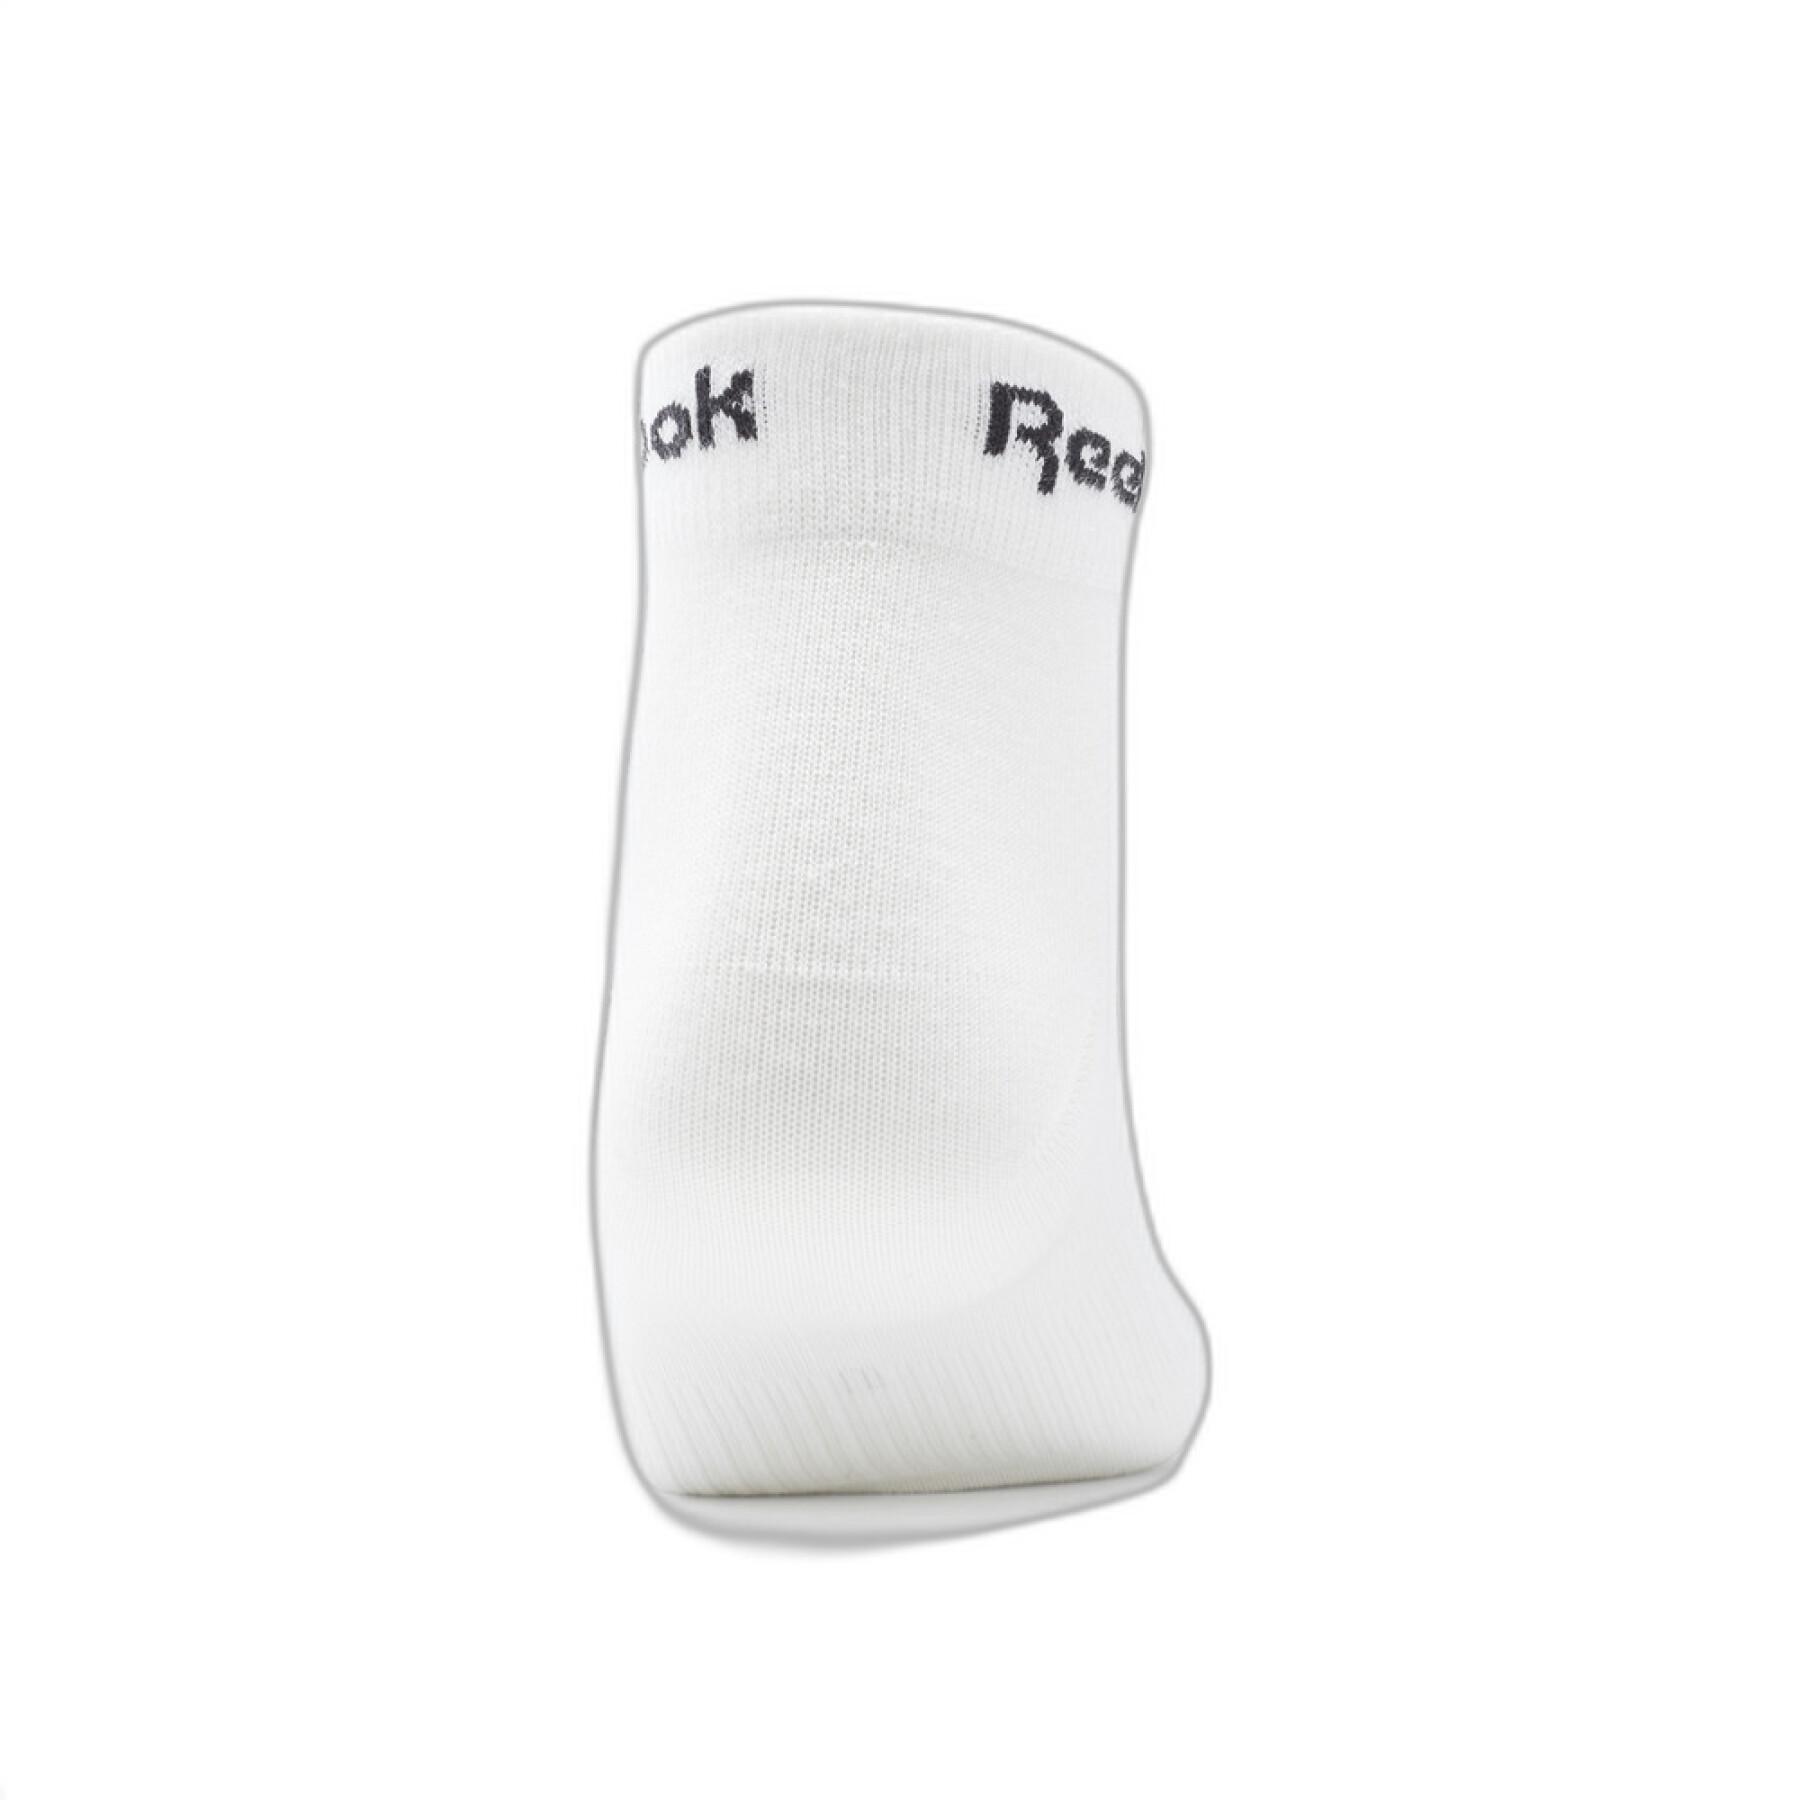 Set van 3 paar sokken Reebok Active Core Ankle